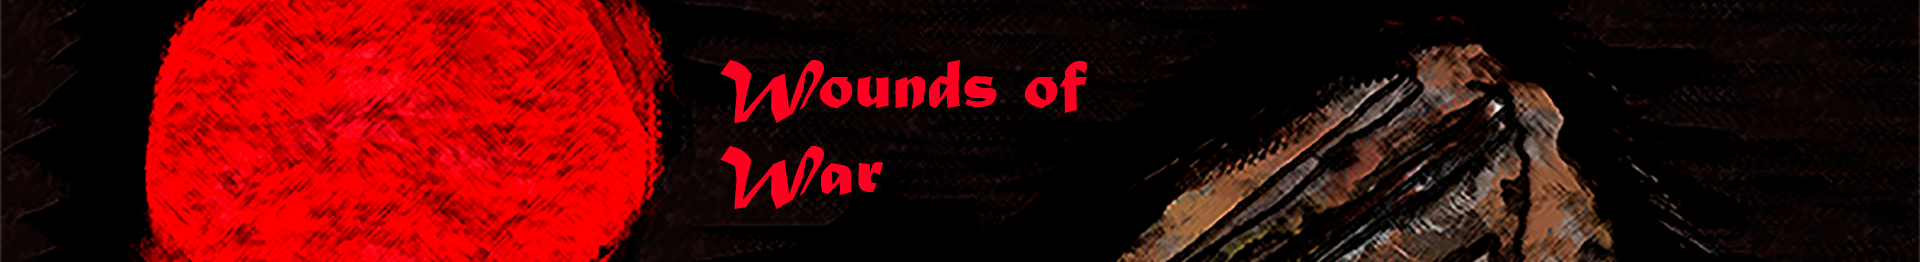 Wounds of War banner